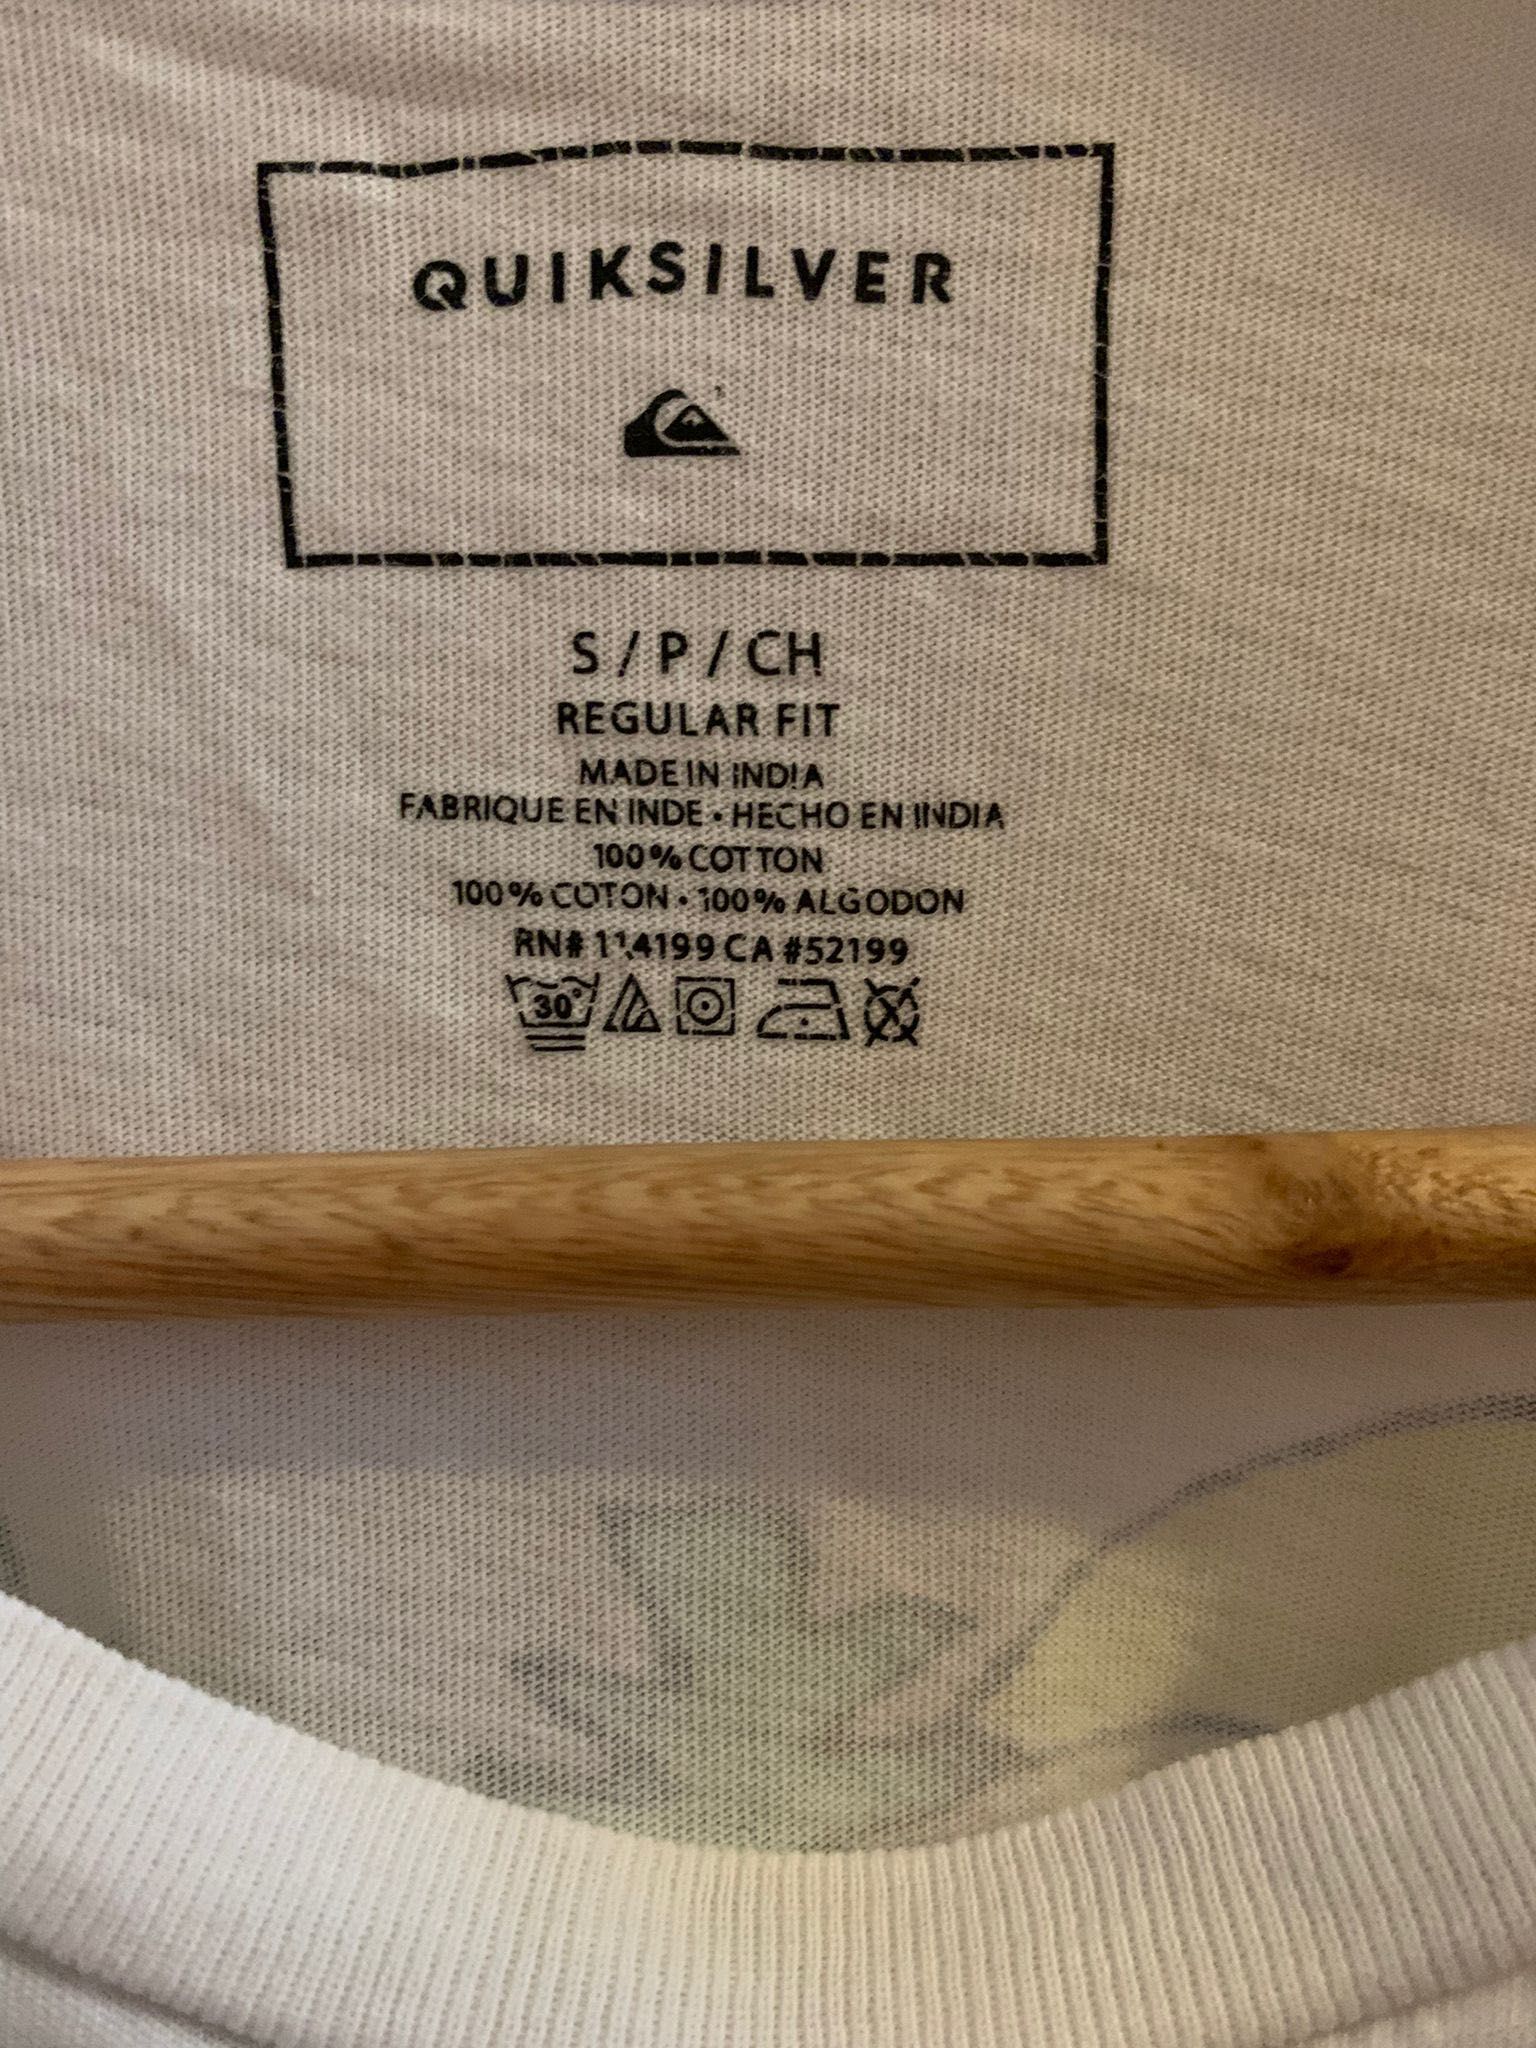 Camisas QuickSilver e Gap